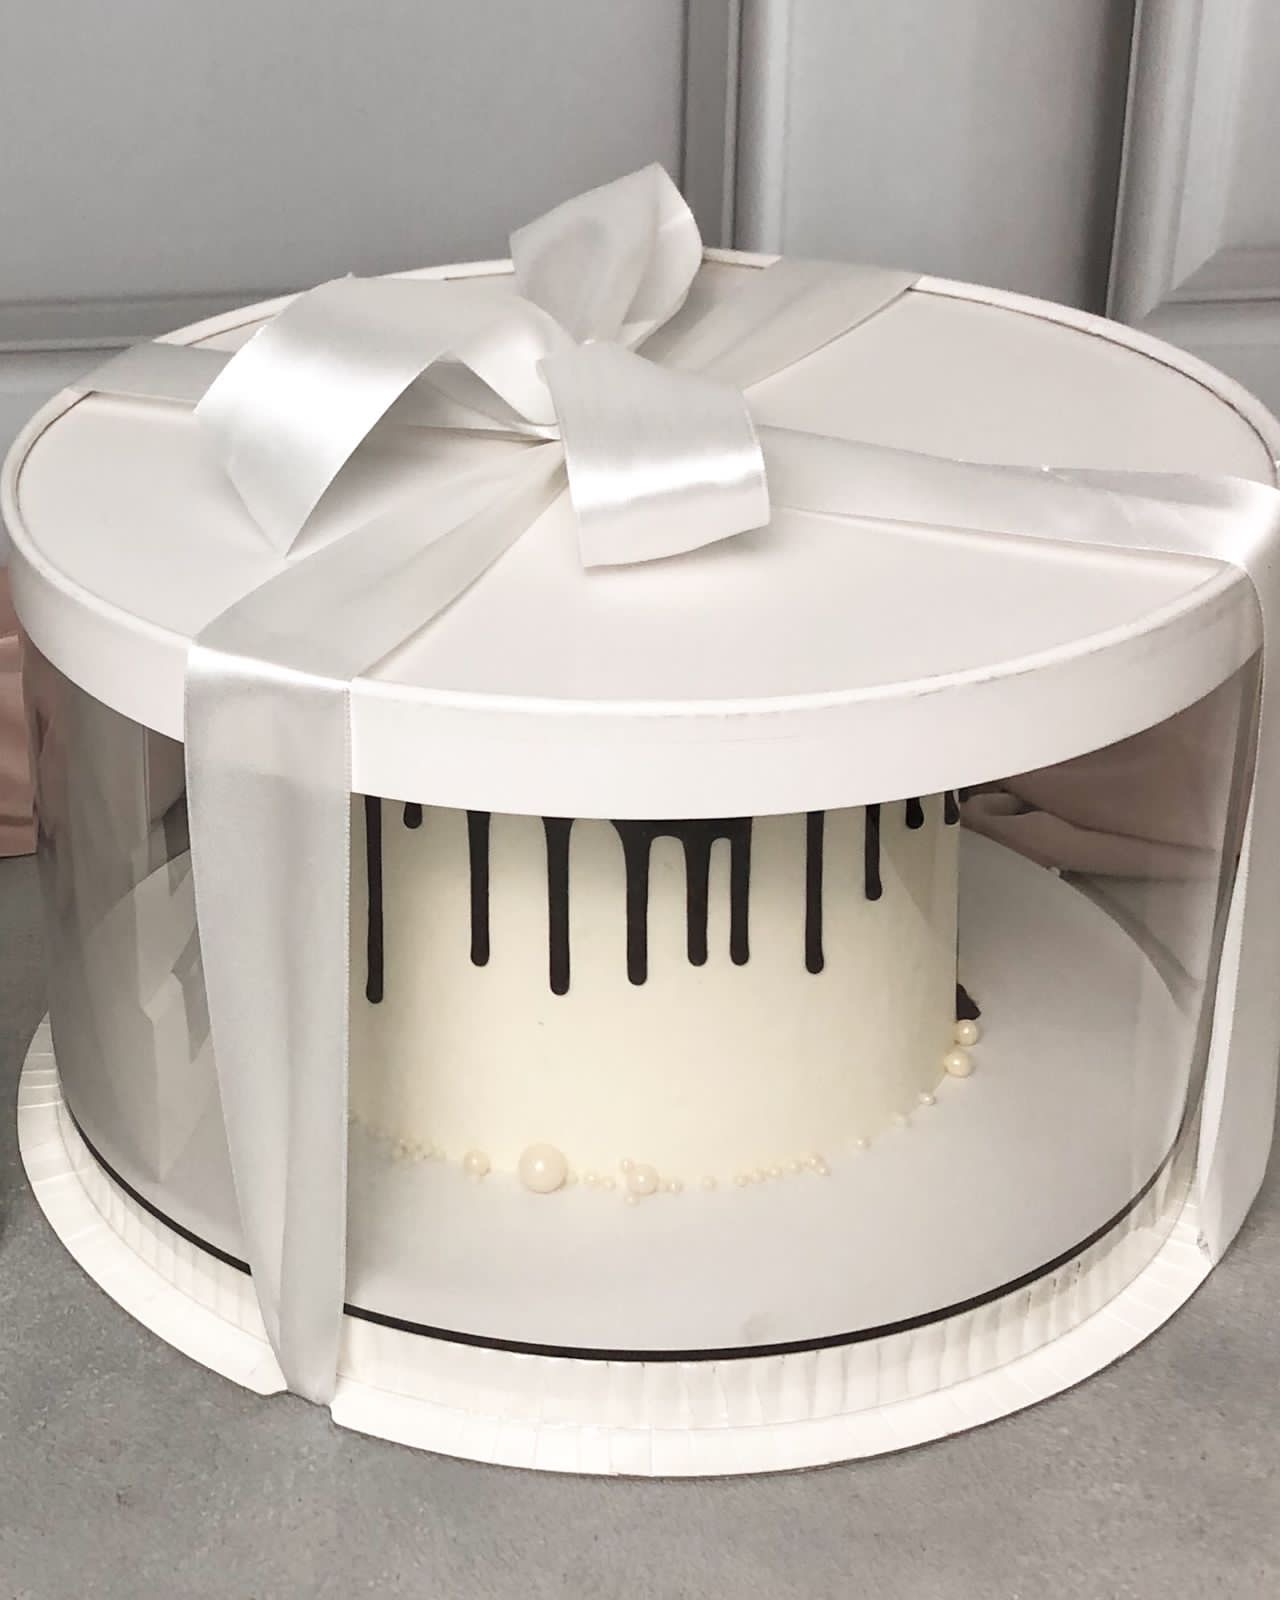 Коробка для торта тубус  30/23, толщ.пласт. 0,5 мм, цвет белый, усиленная, водоотталкивающая подложка с вырезами под ленту